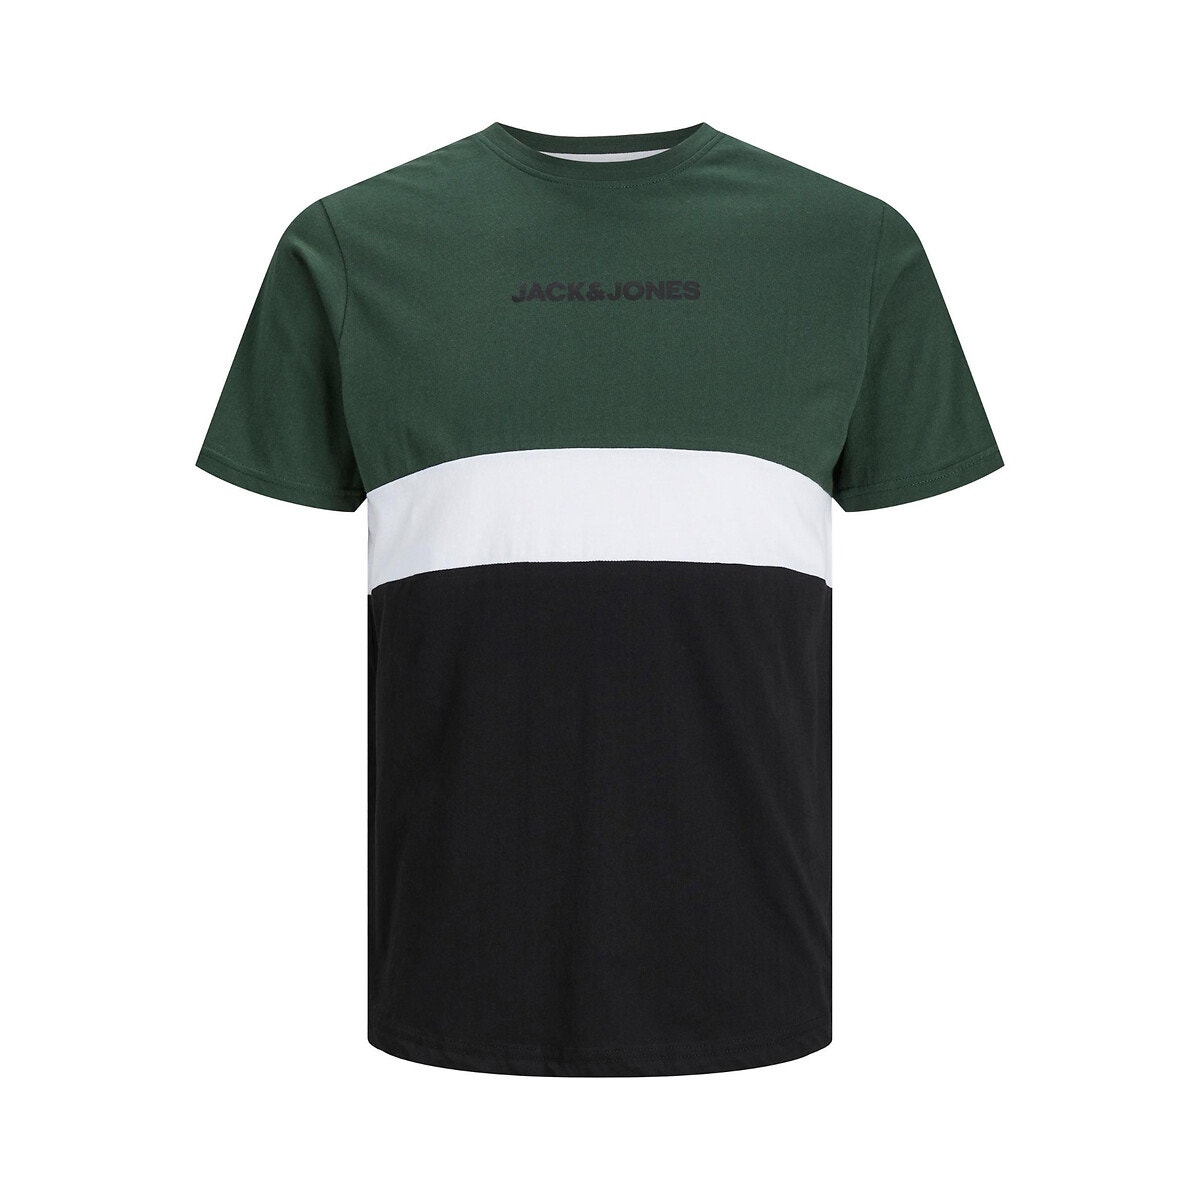 Κοντομάνικο T-shirt color block με στρογγυλή λαιμόκοψη, Jjereid